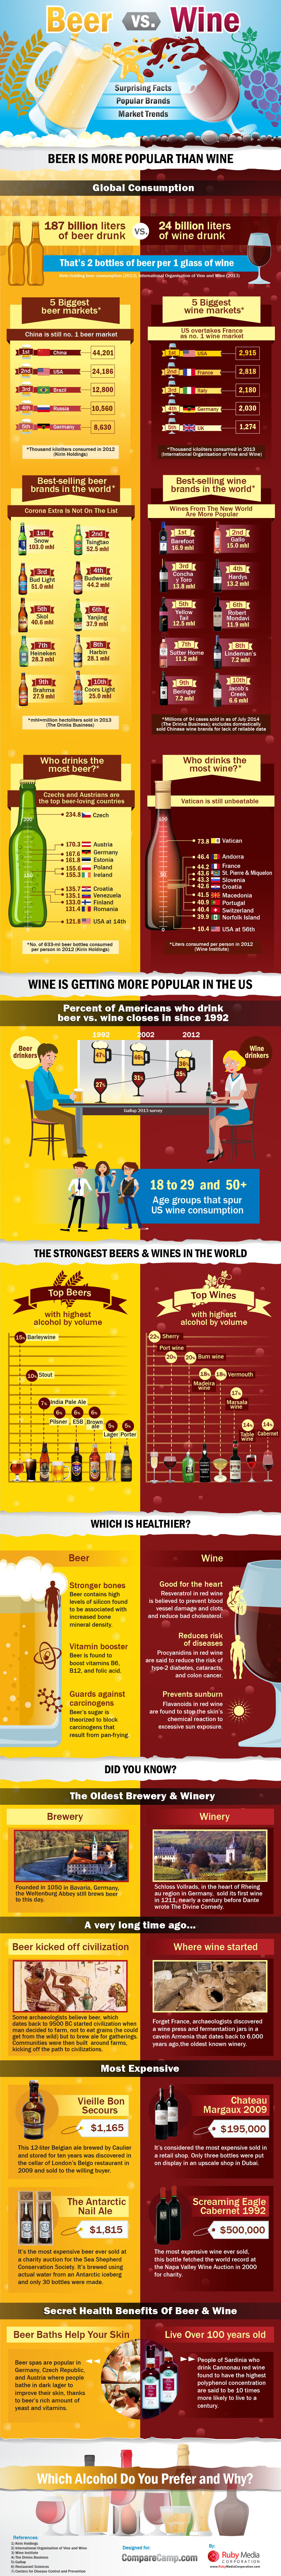 Beer vs. Wine_Infographic_Finale